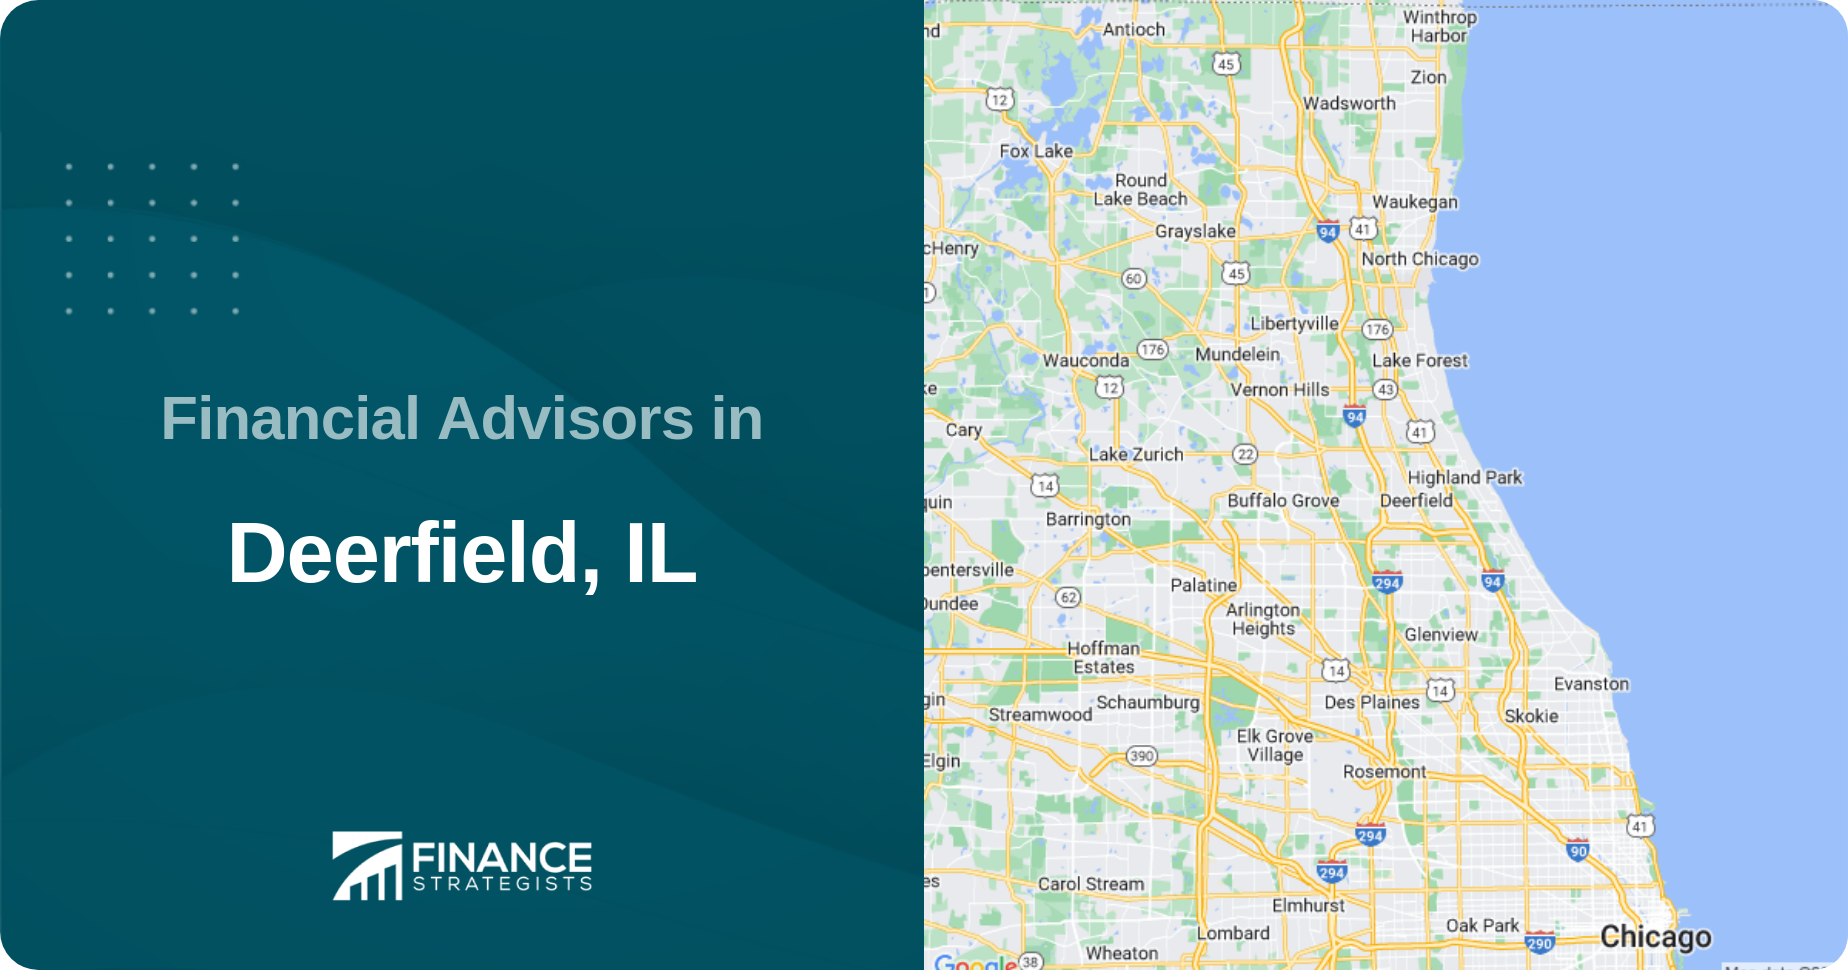 Financial Advisors in Deerfield, IL